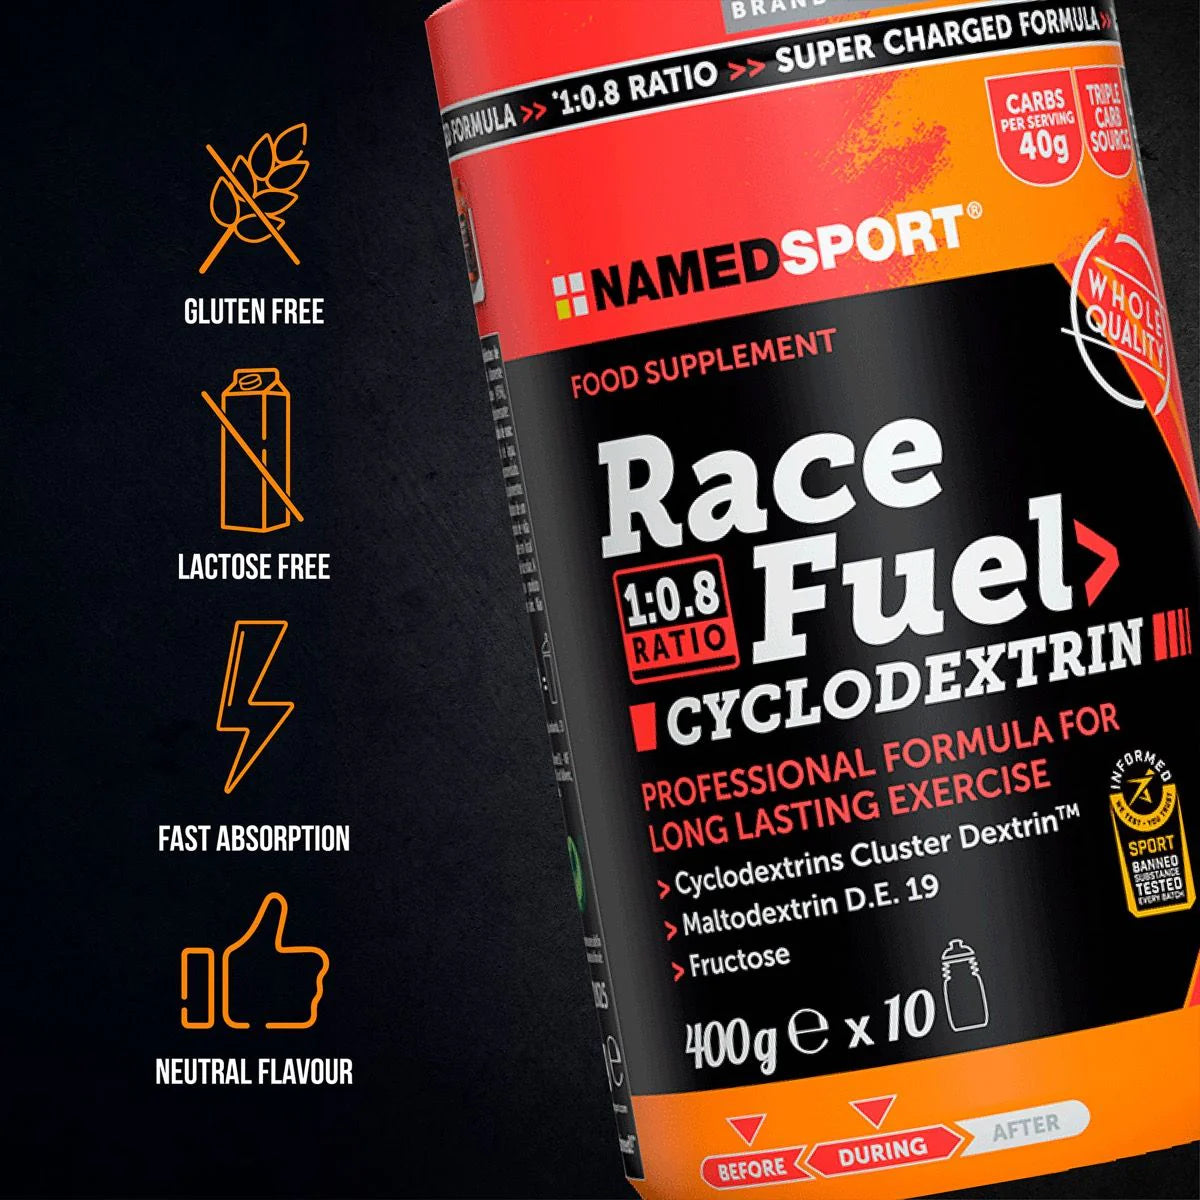 NamedSport Race Fuel